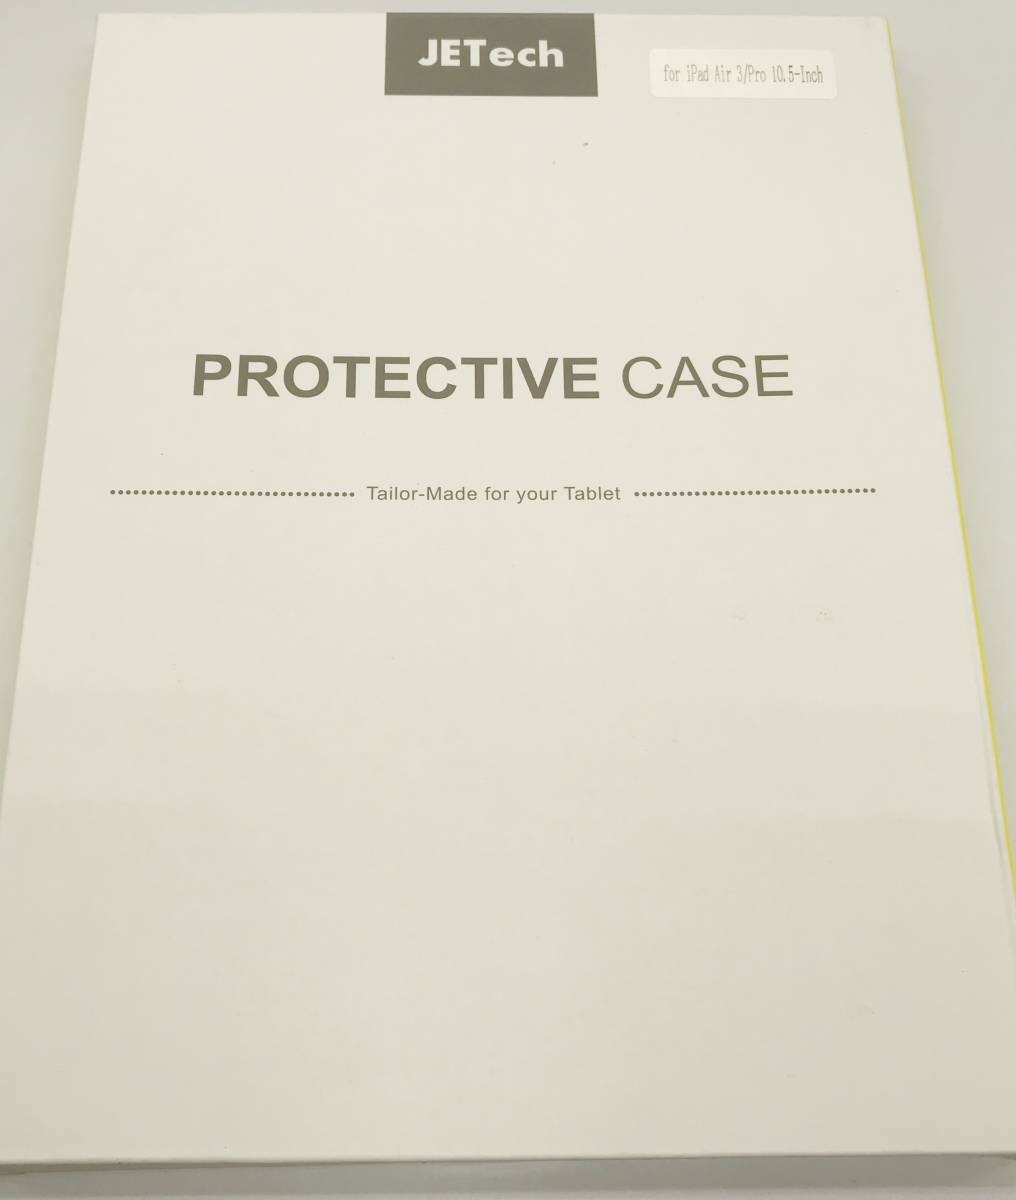 ★【在庫処分価格】JETech PROTECTIVE CASE iPad Air 3 Pro 10.5インチ スタンド ブラック☆C01-440a_画像4